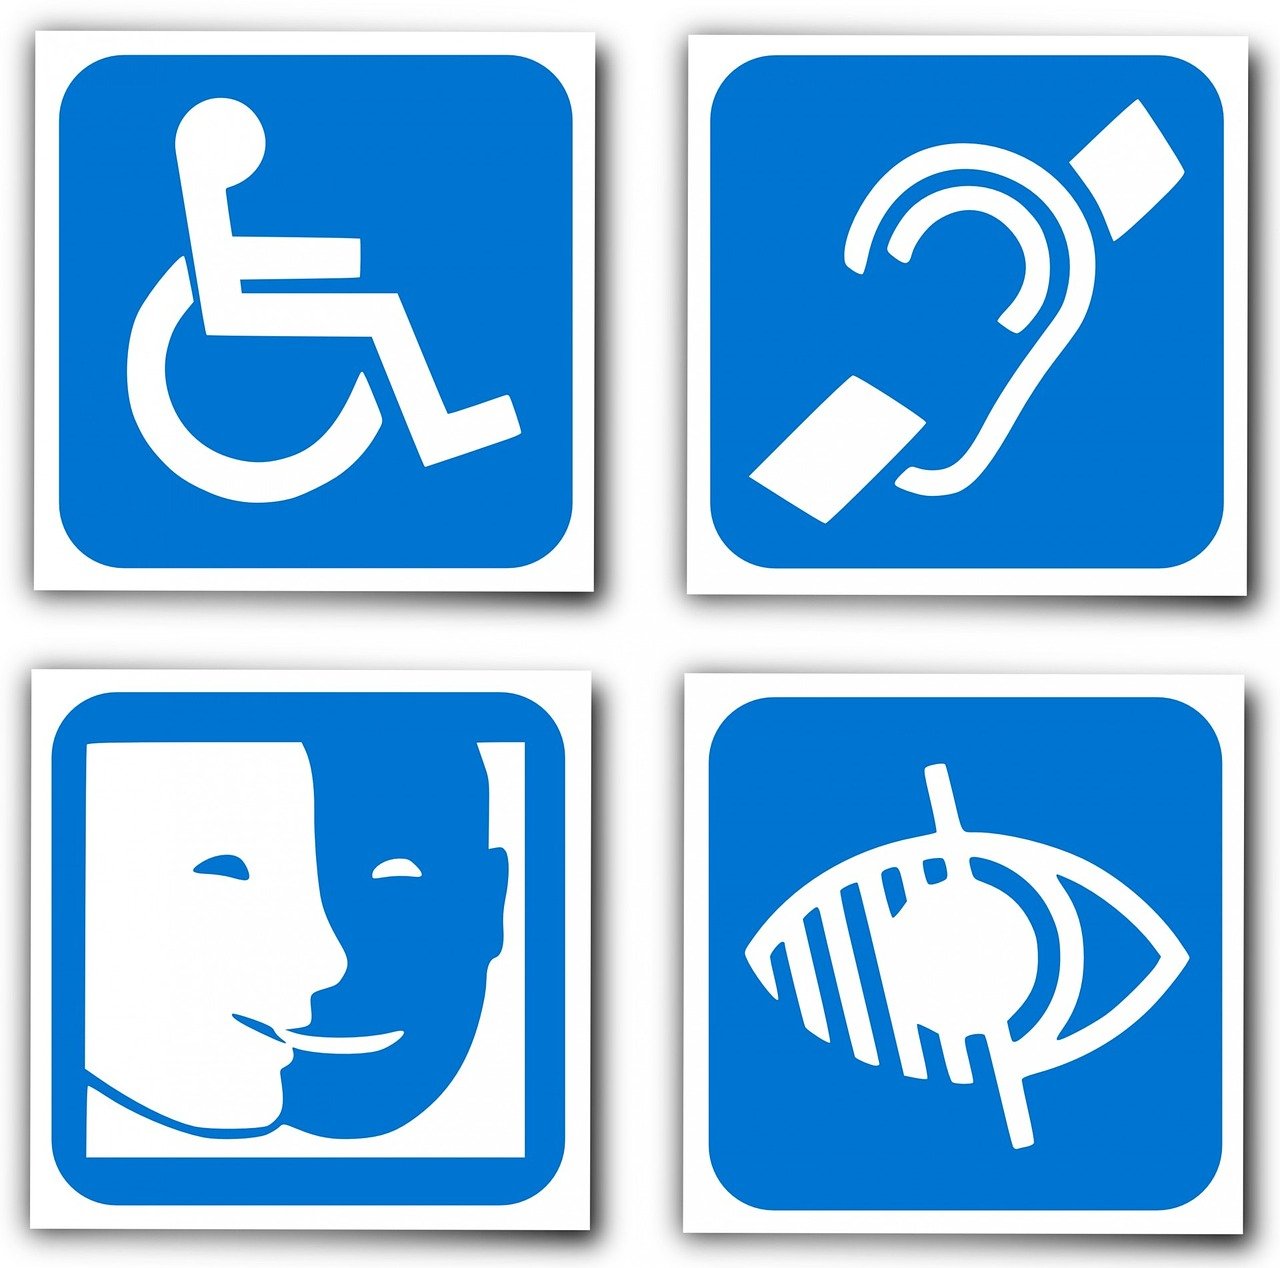 Vier Zeichen: Ein Mensch im Rollstuhl, ein durchgestrichenes Ohr, ein dunkles und ein blaues Gesicht, ein durchgestrichenes Auge